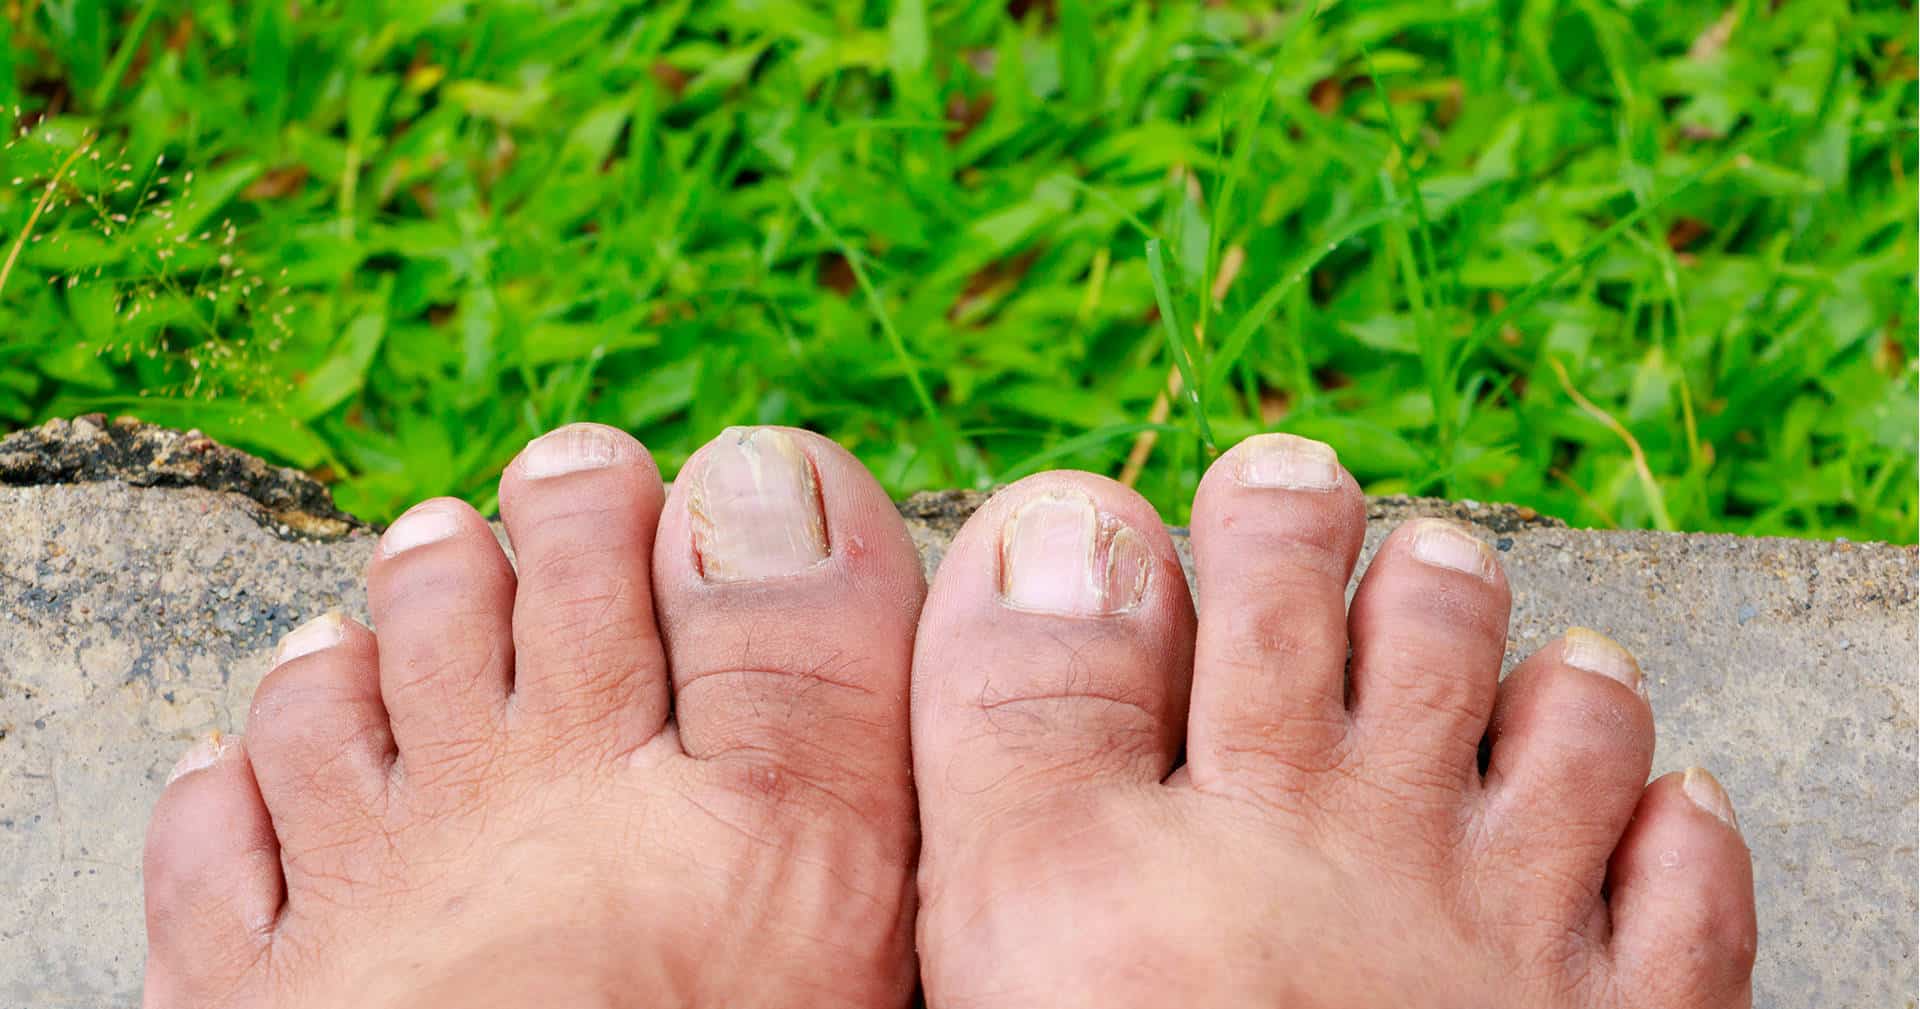 Длинные грязные ногти на ногах